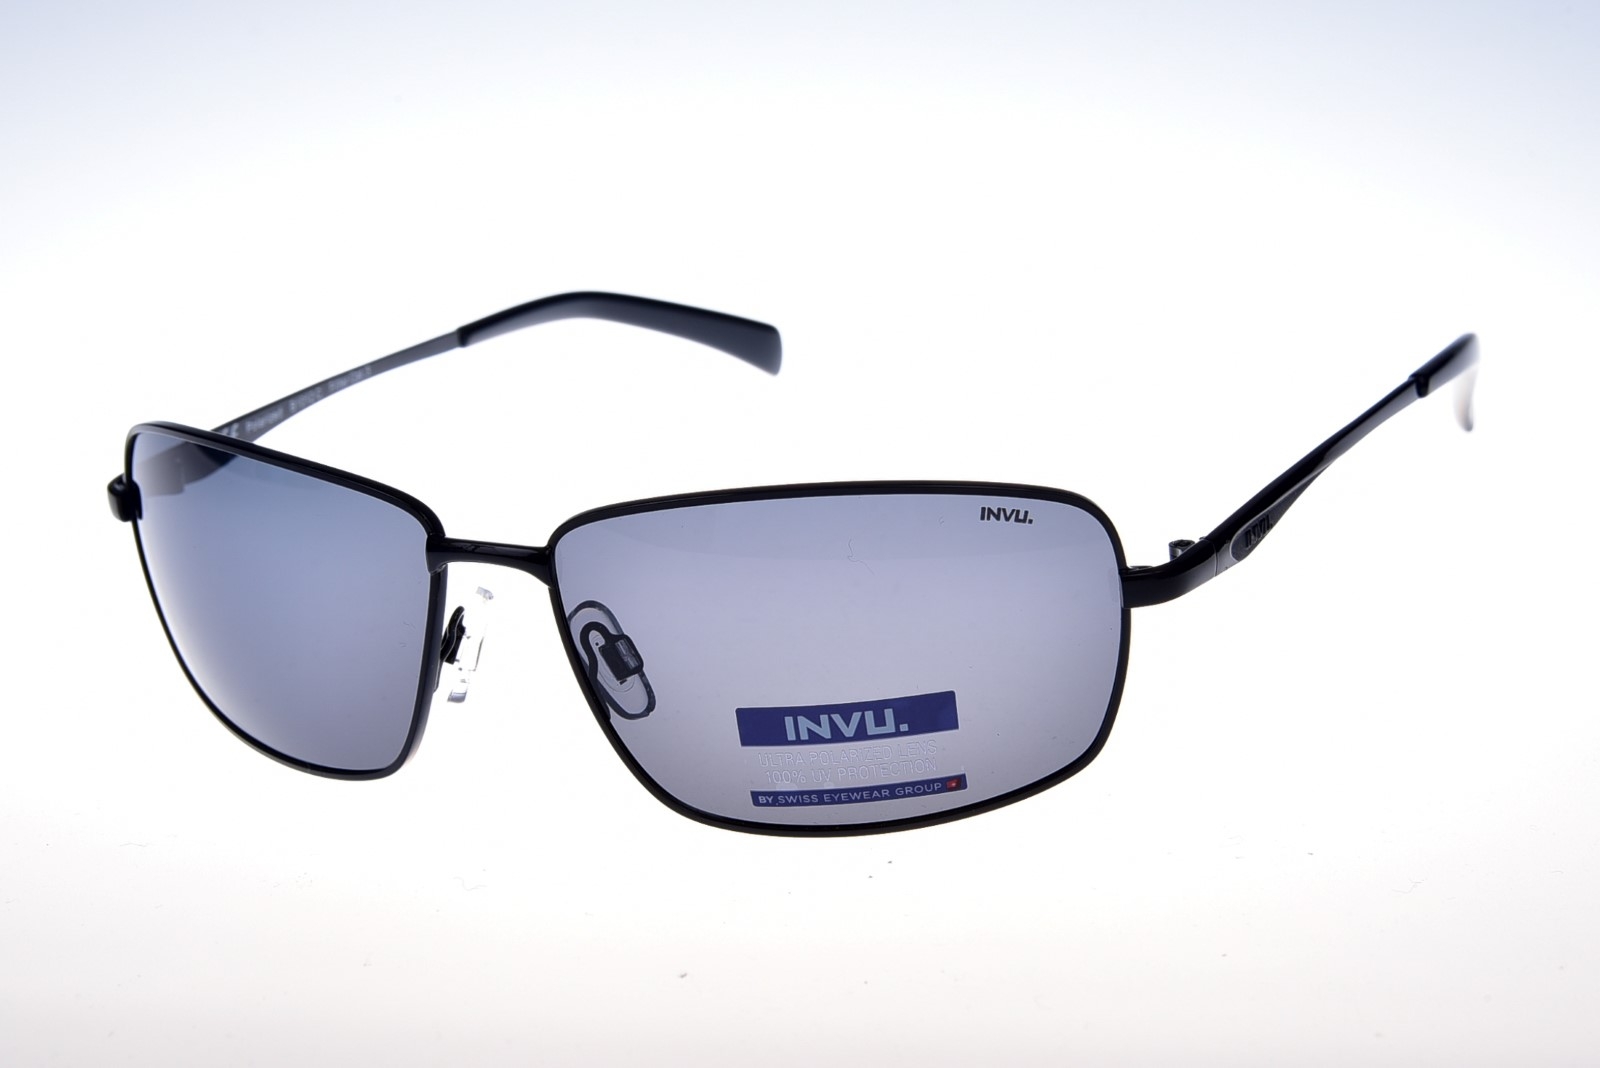 INVU. B1012C - Pánske slnečné okuliare